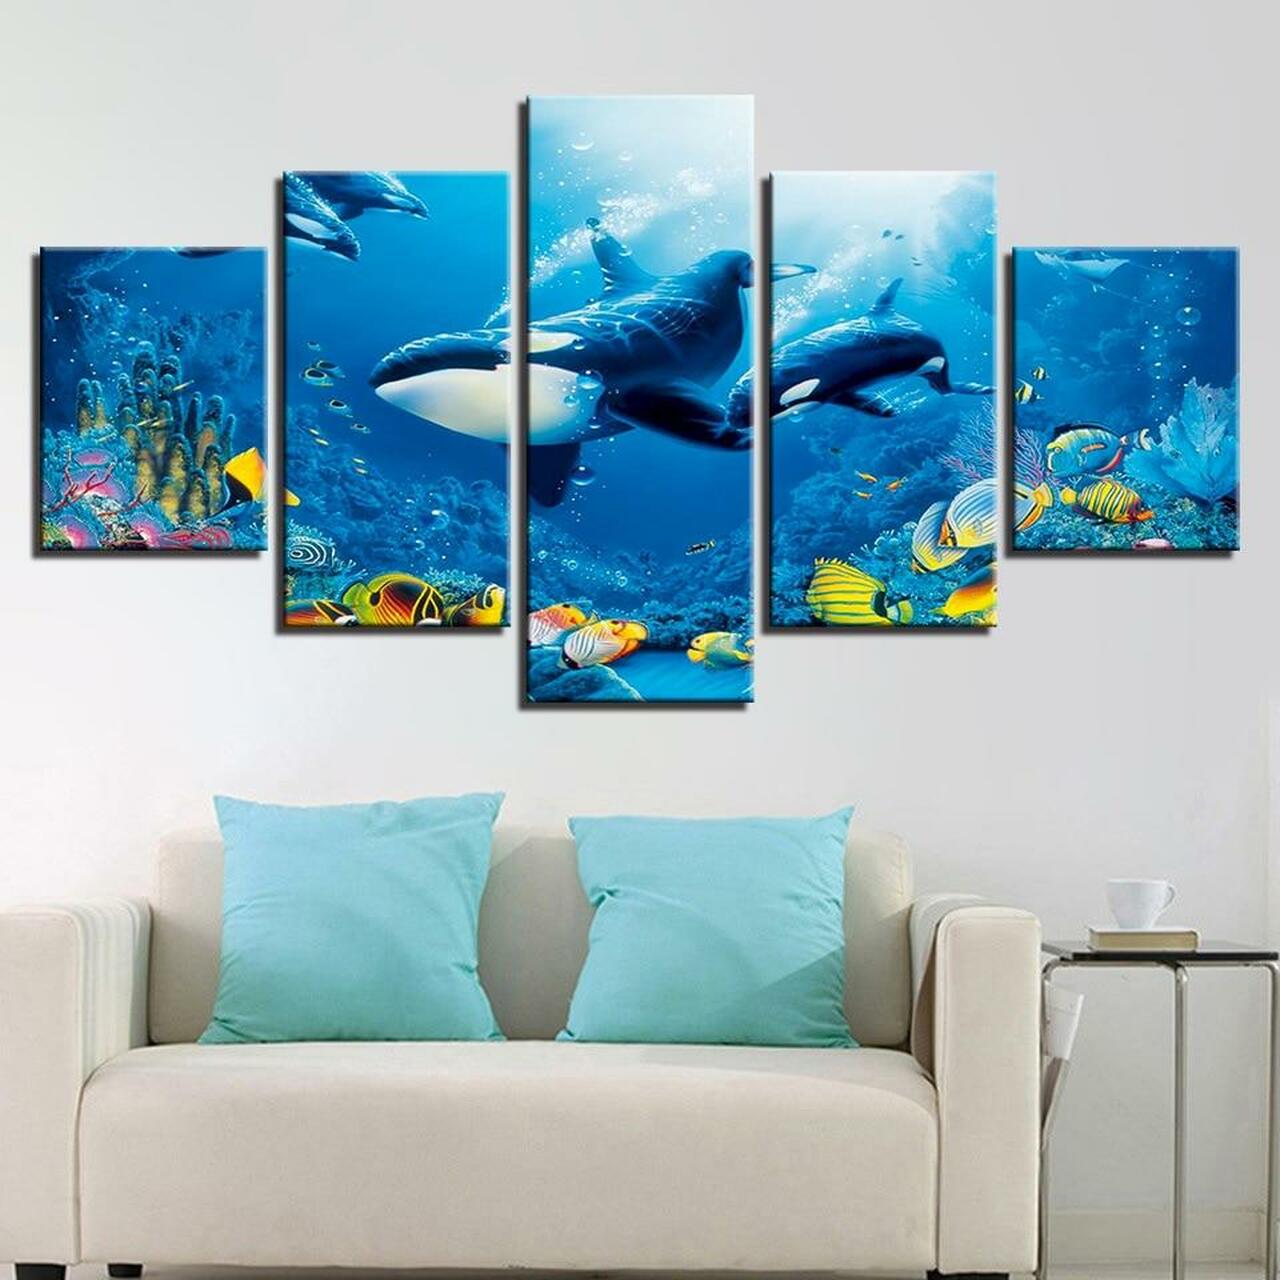 whale and goldfish 5 pices peinture sur toile impression sur toile toile art pour la dcoration intrieuren9kqo